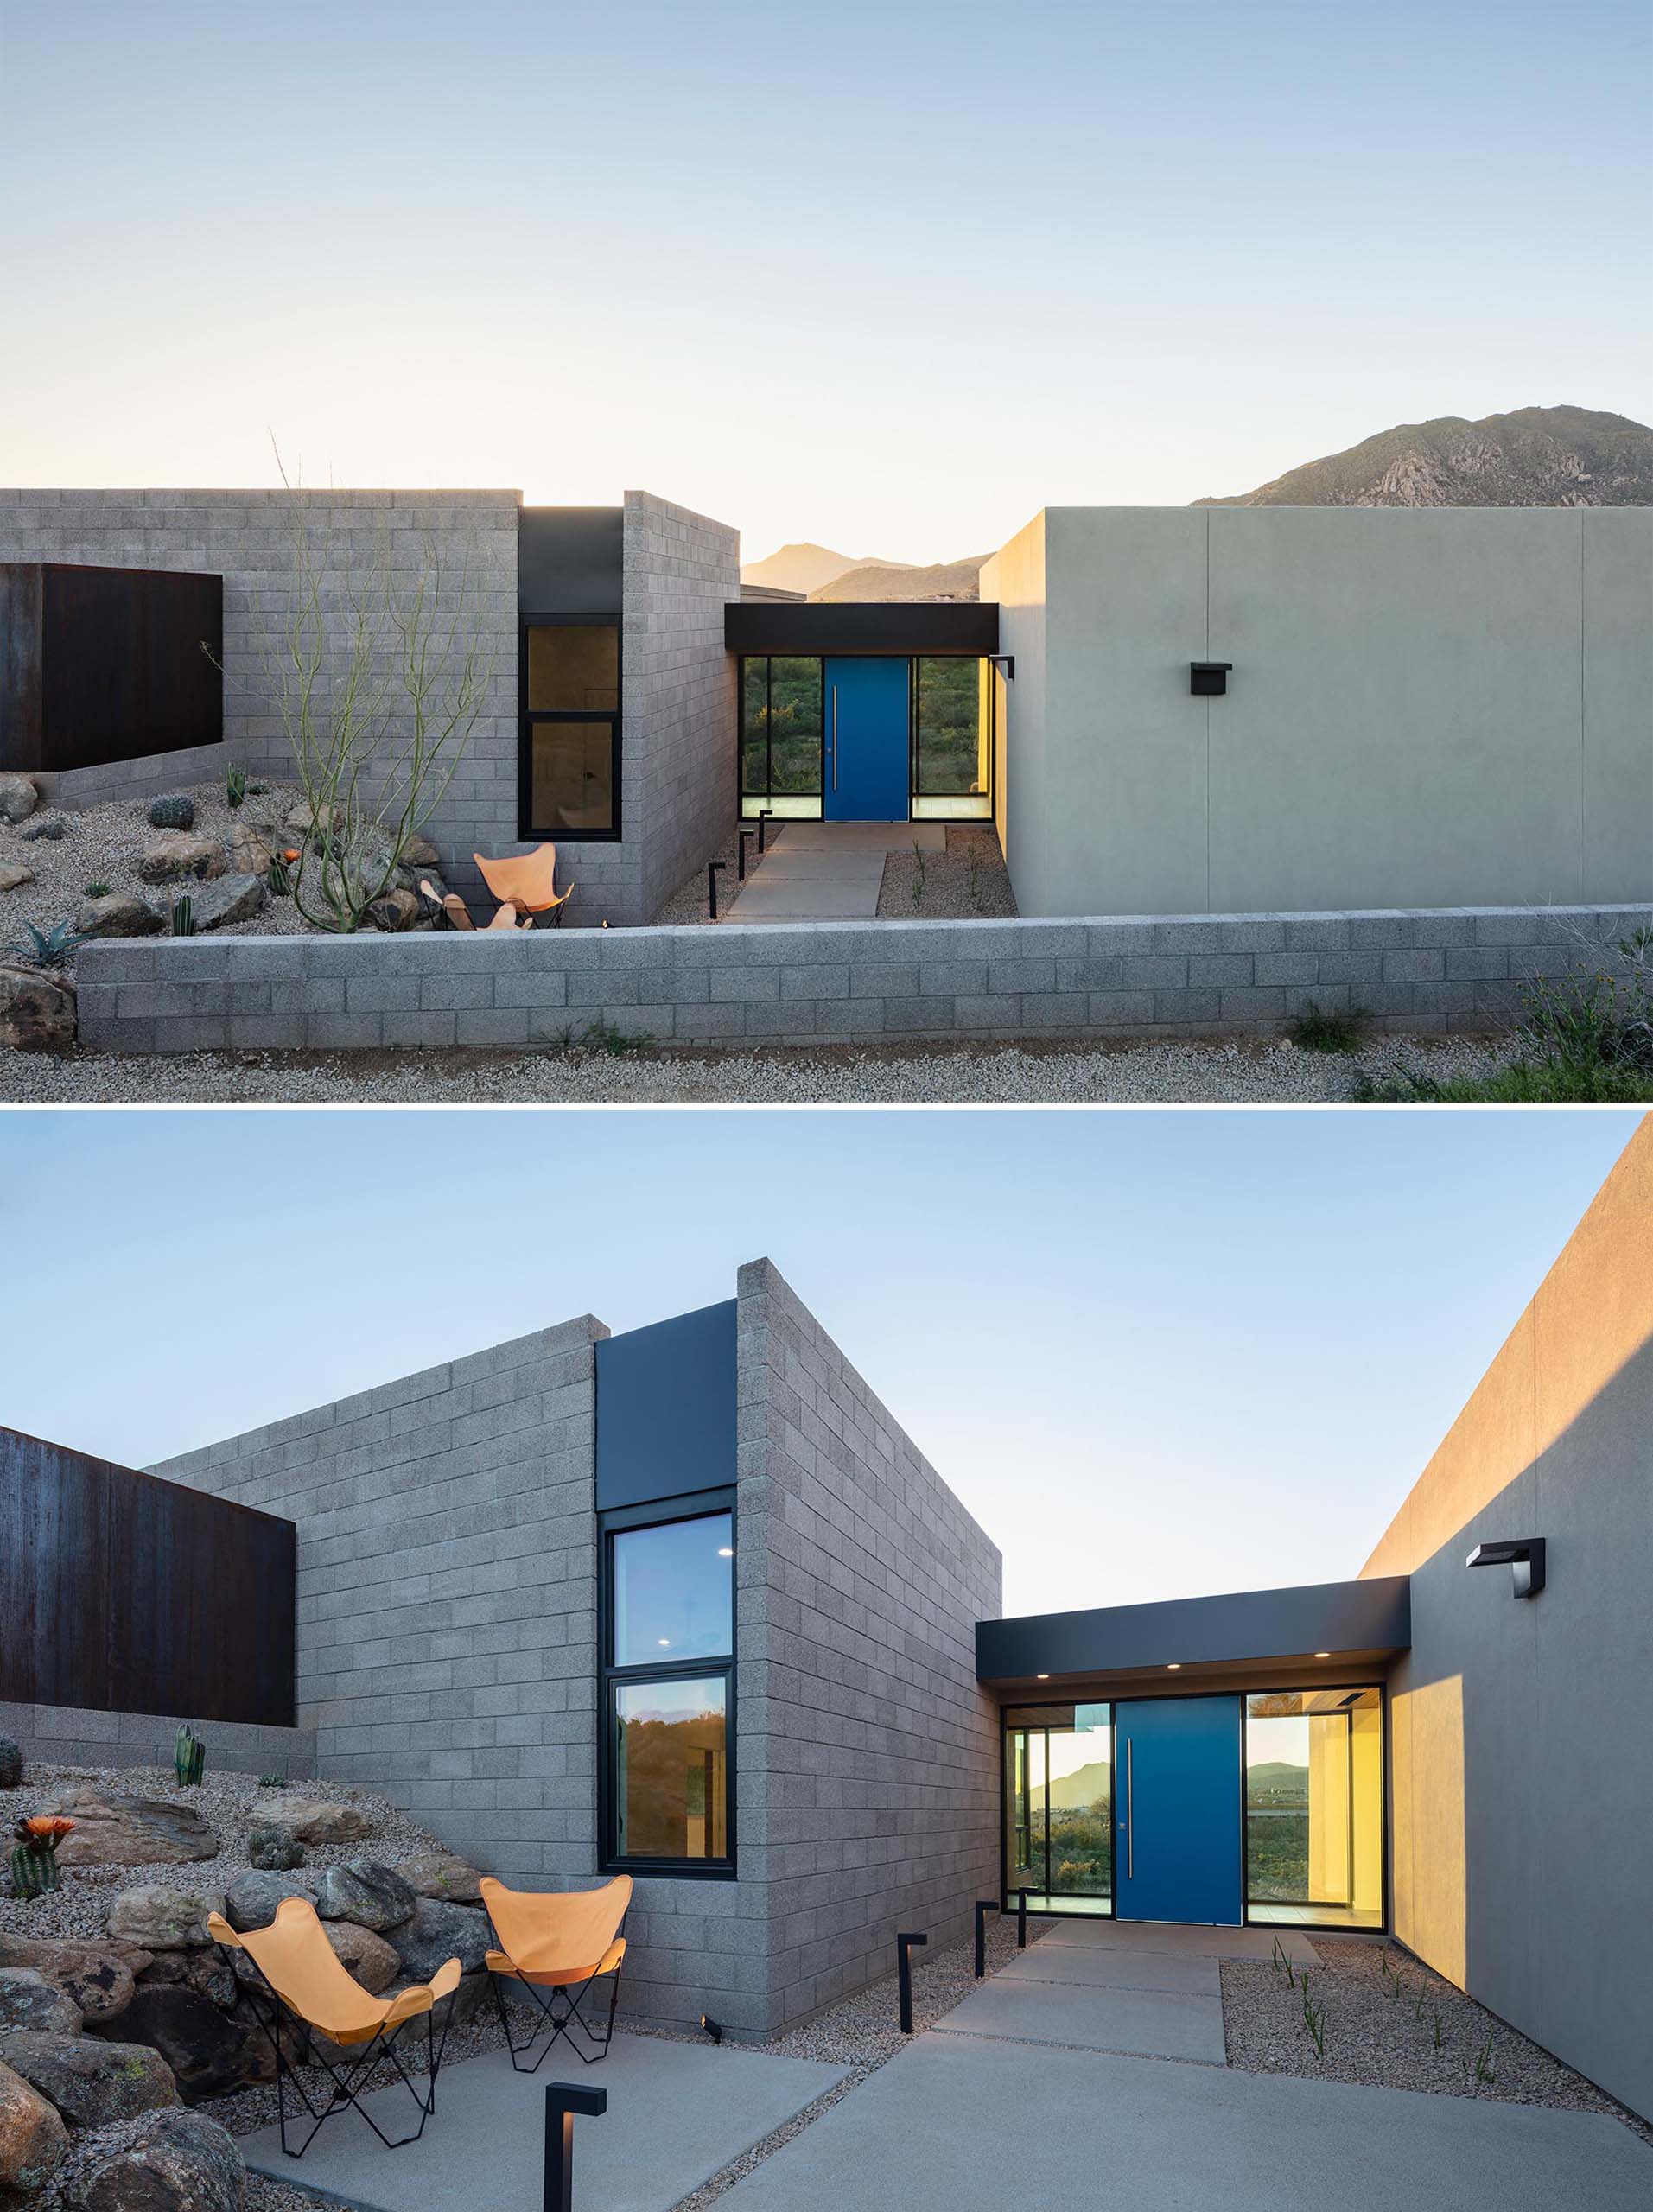 Вход в этот современный дом в пустыне, который выделен ярко-синей вращающейся входной дверью, соединяет фойе, вход в гараж и доступ в гостевую зону через стеклянный «мост».